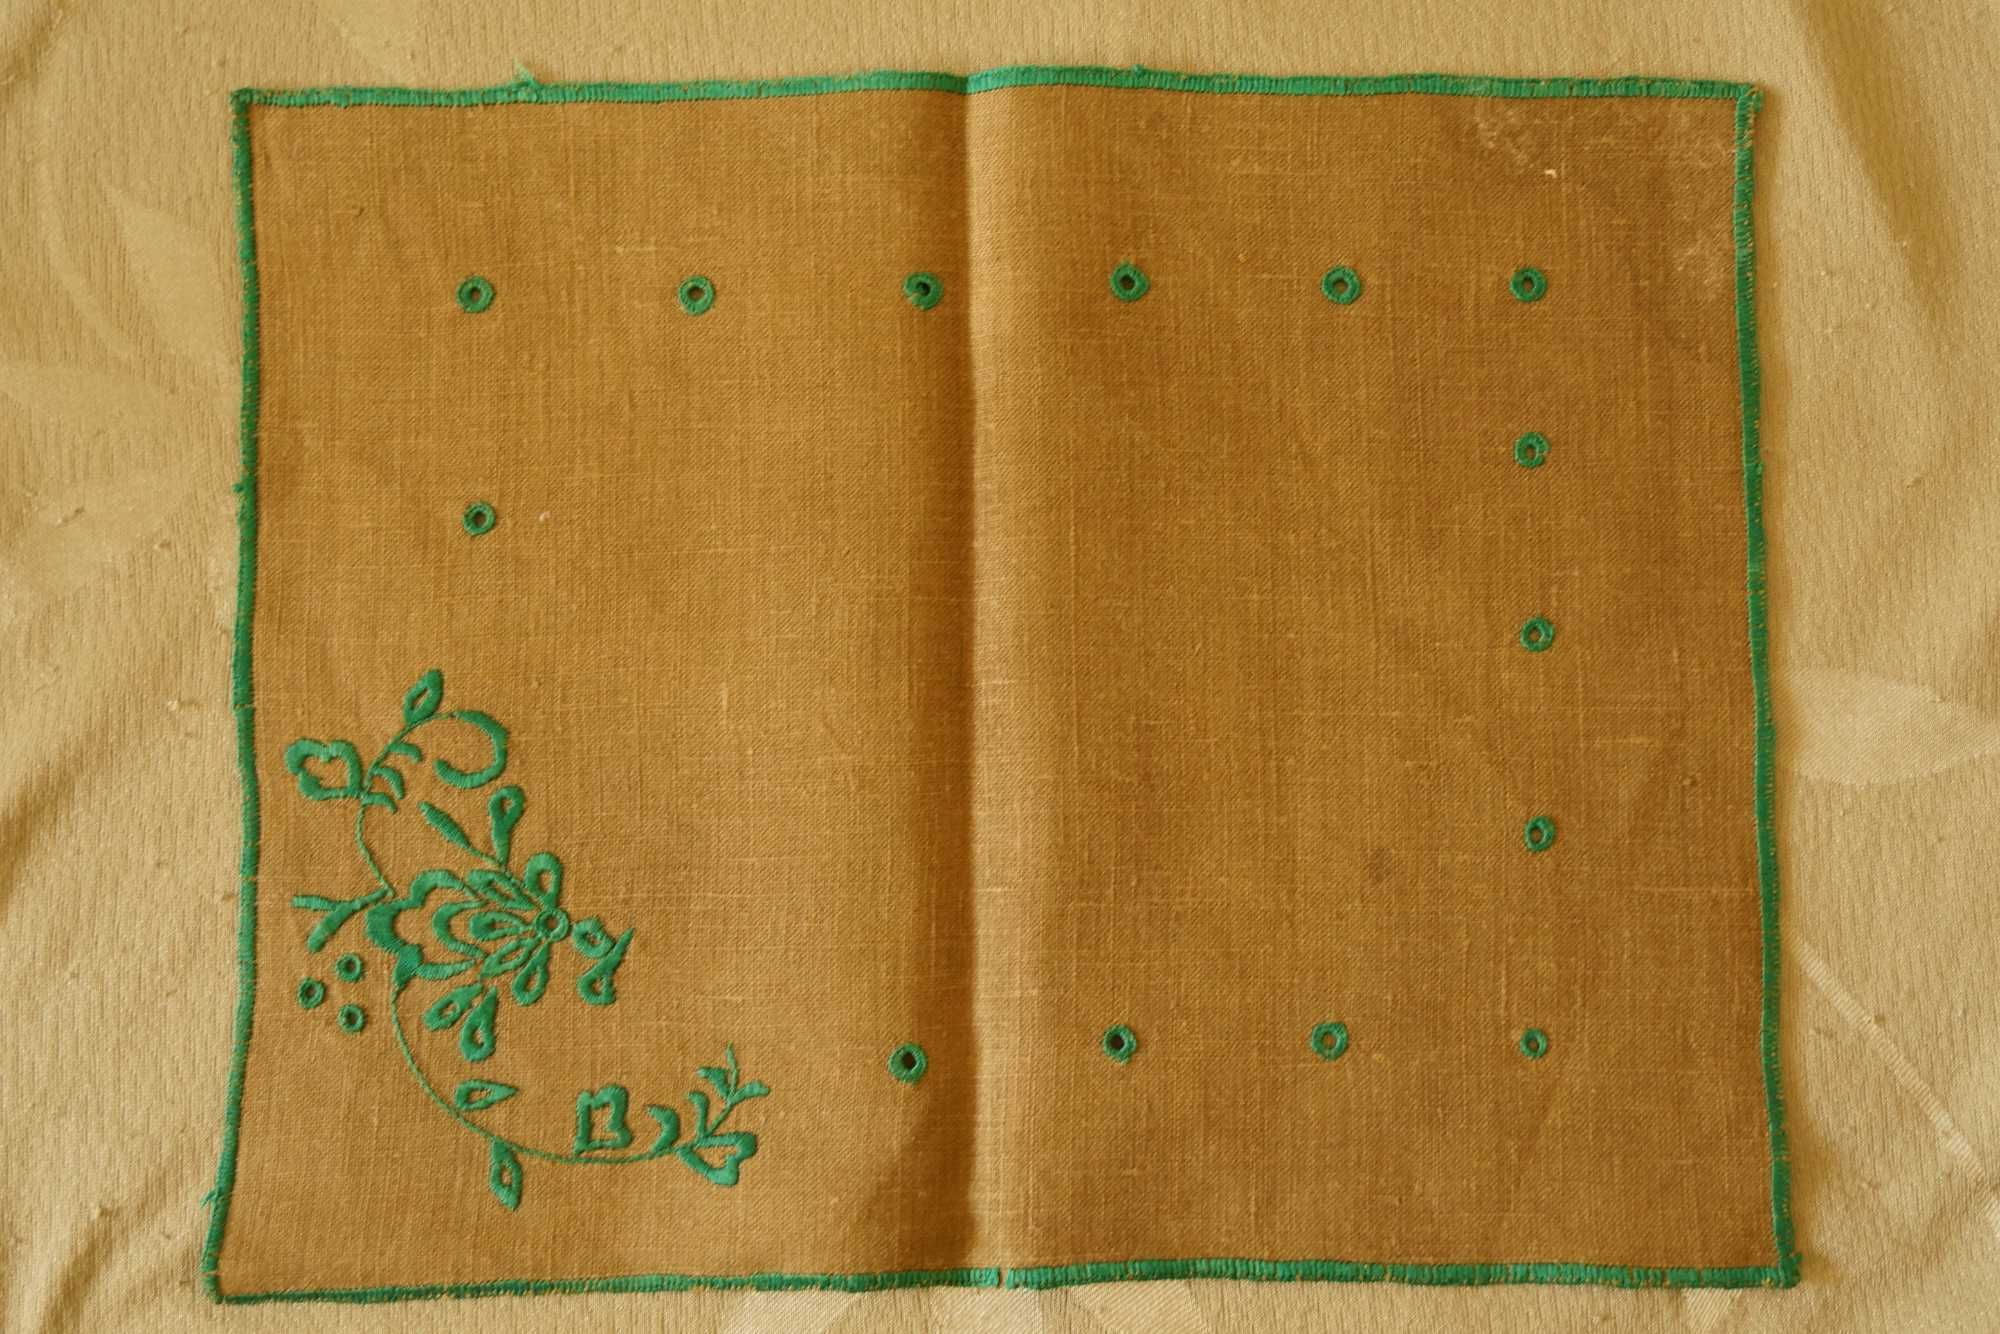 Nowa serweta obrus bieżnik lniany haft ciemne zielone kwiaty rękodzieł